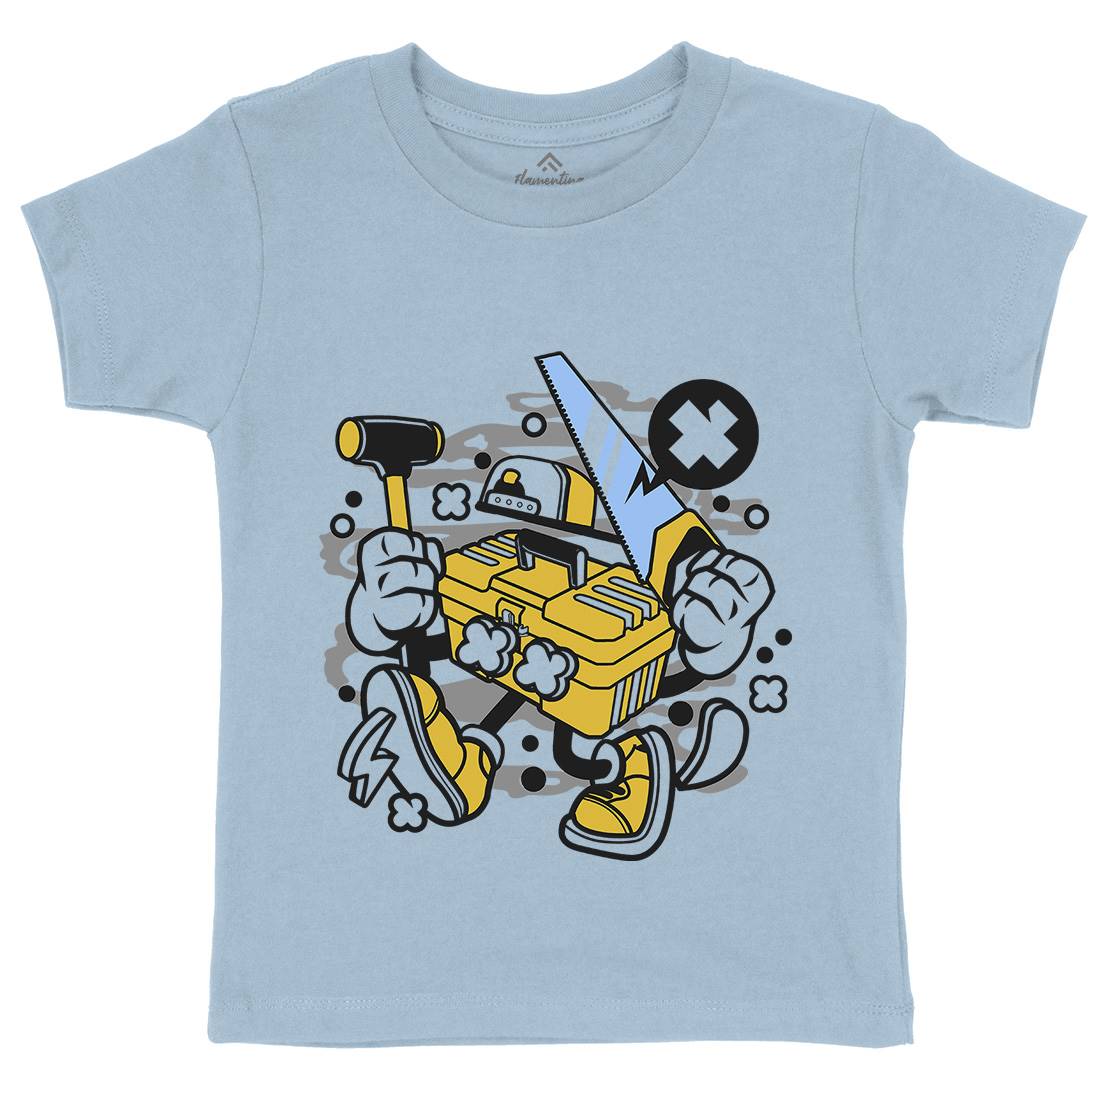 Tool Box Kids Organic Crew Neck T-Shirt Work C282